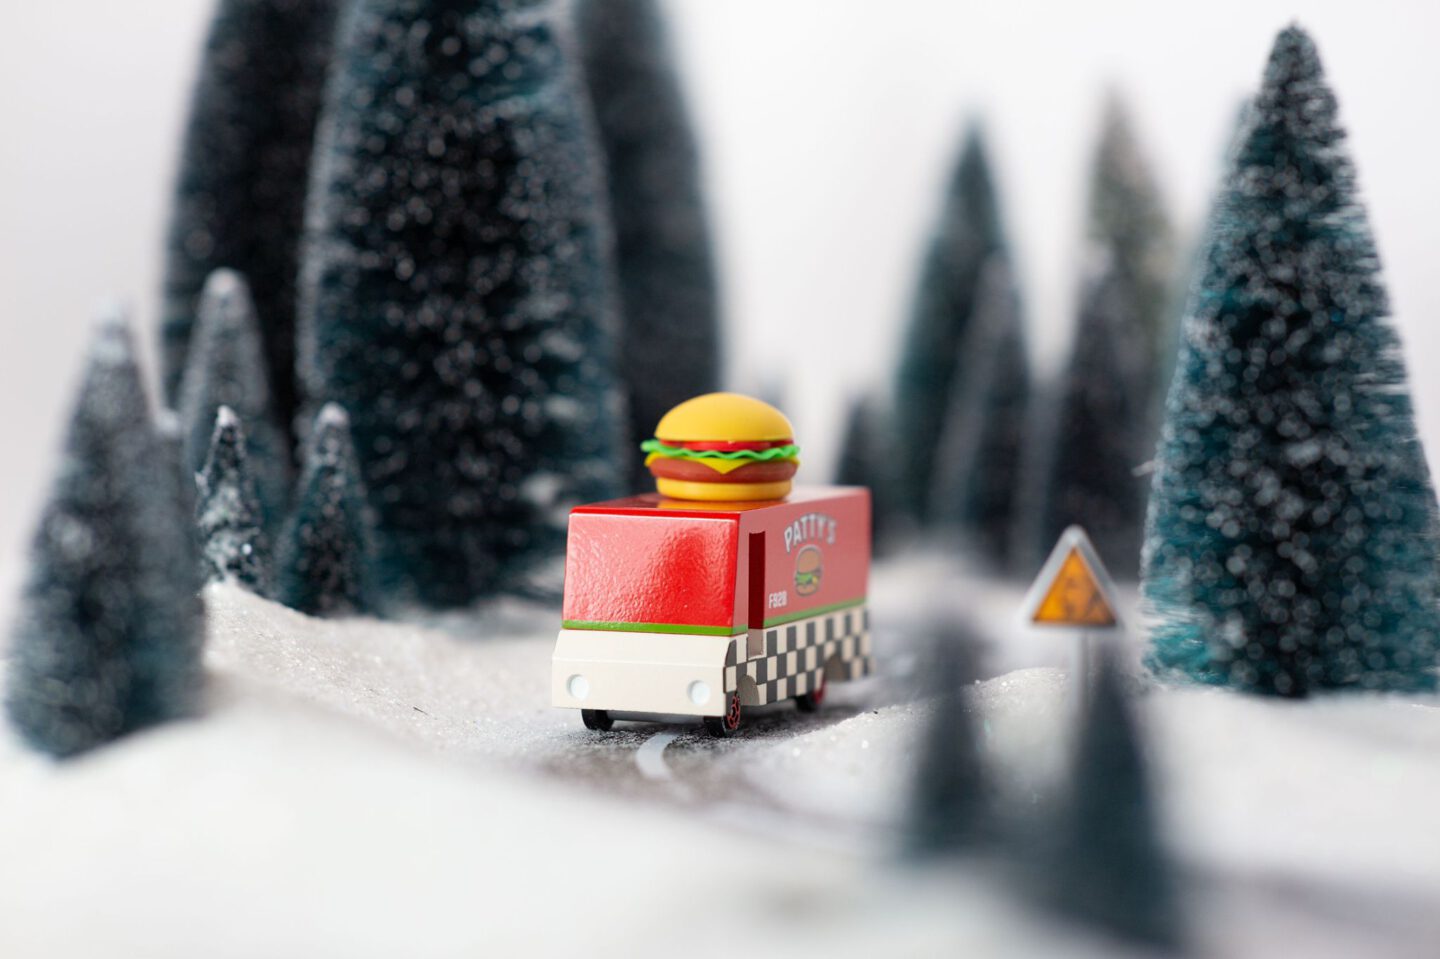 Candylab van hamburger winter